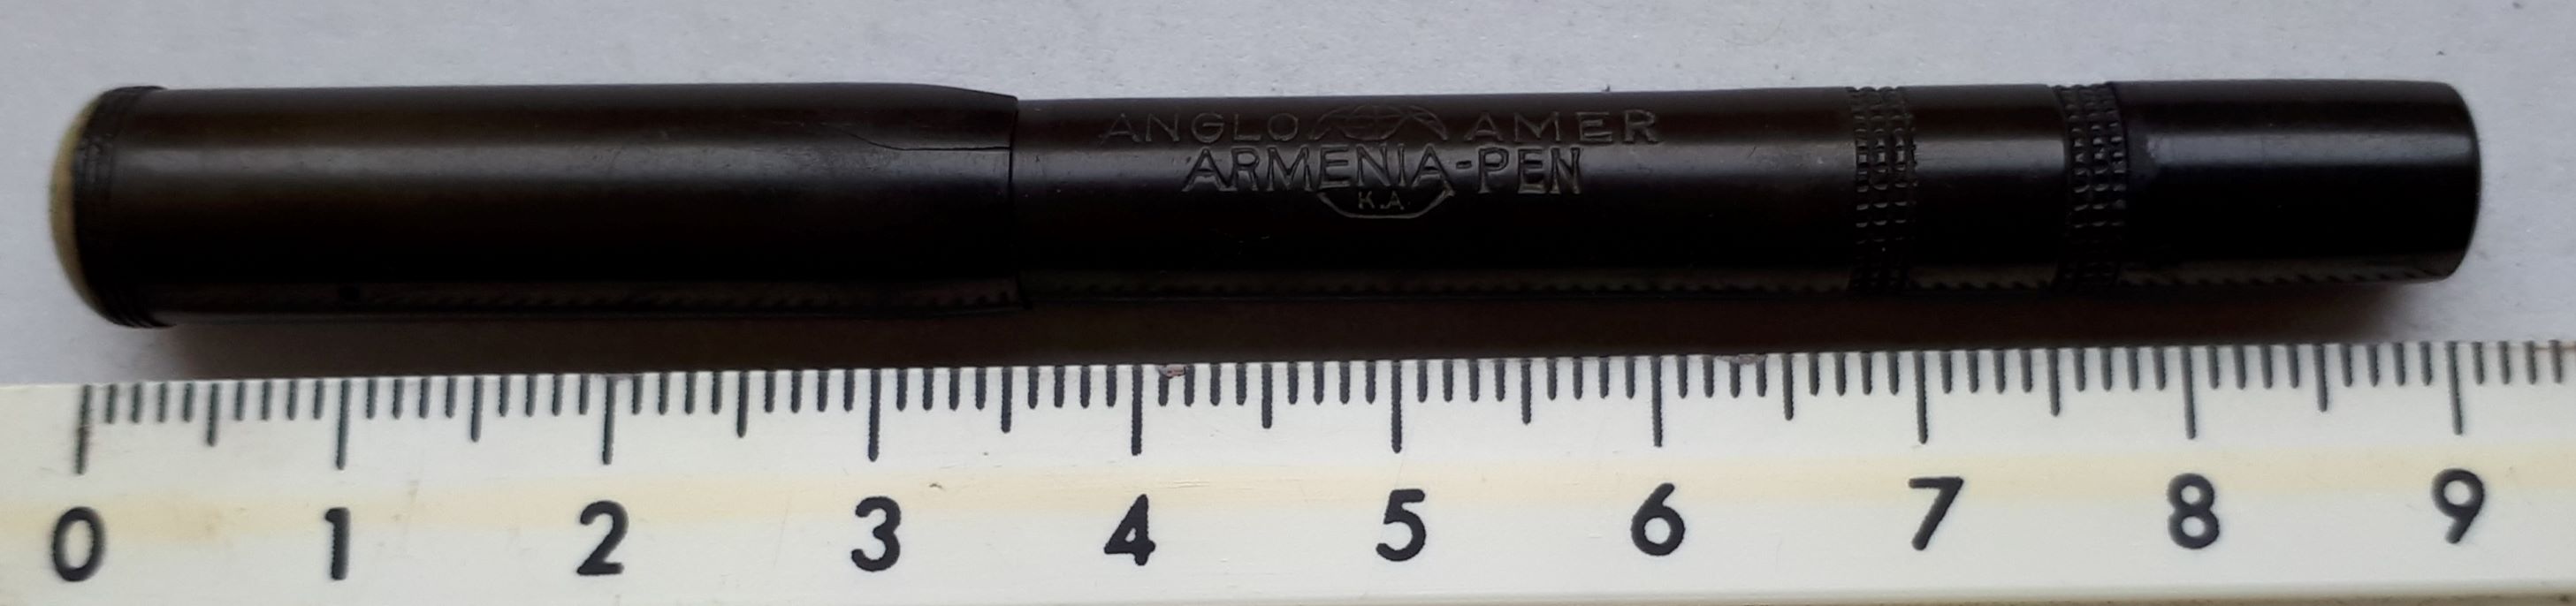 Armenia Pen 2019-04-30 15.39.08 kl.jpg